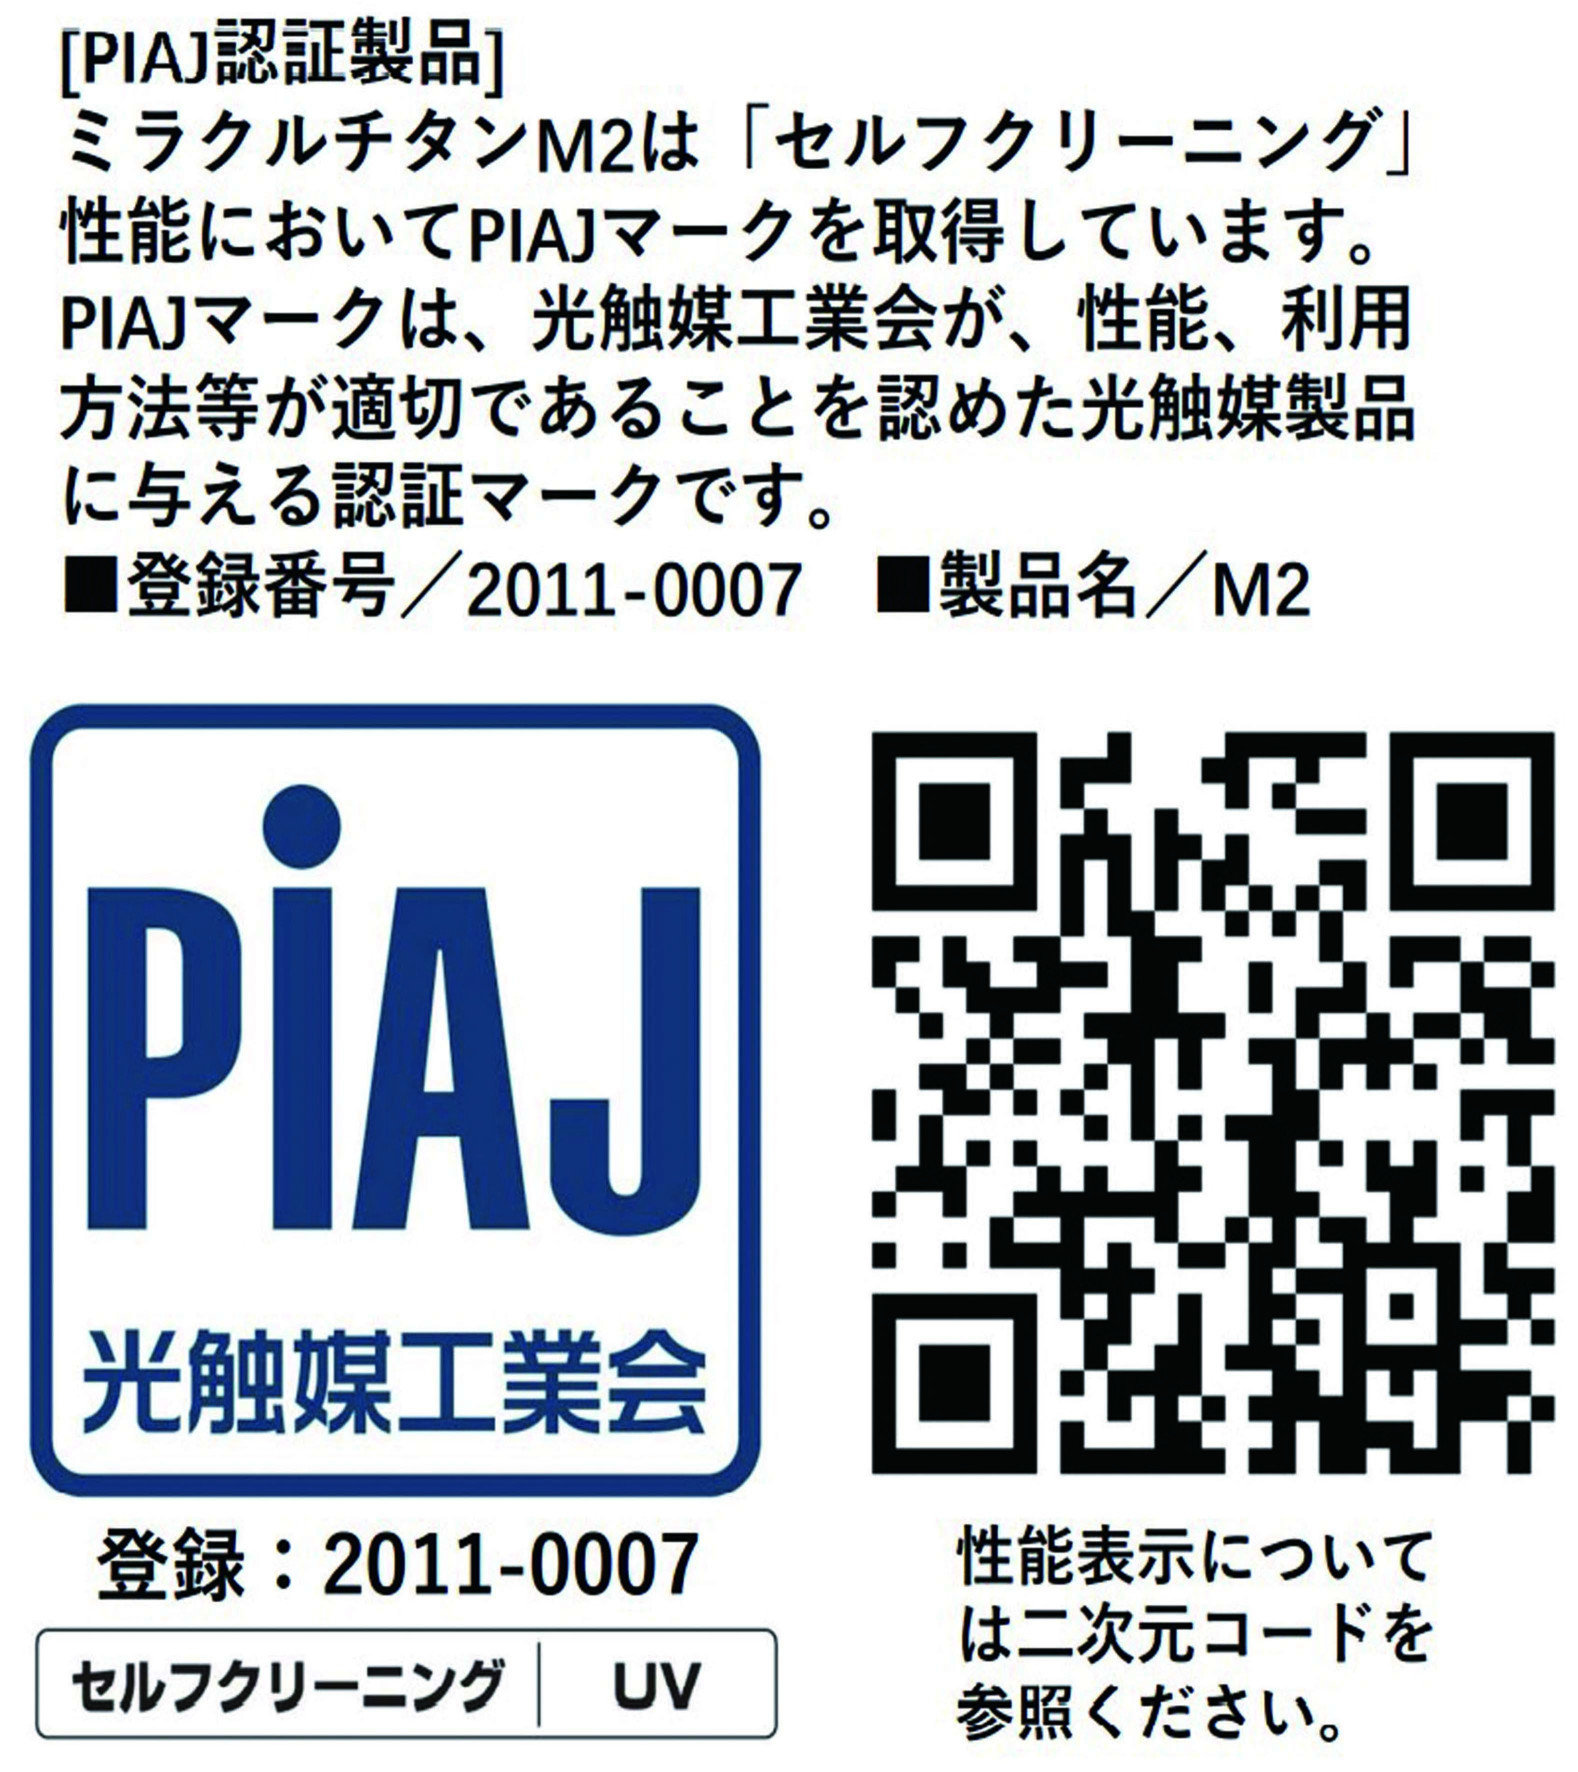 日本光觸媒協會PIAJ登錄認證商品M2，Tio2光觸媒具有催化分解甲醛、淨化空氣、抗汙、自潔、防霉、抗菌、抗病毒等優異特性。